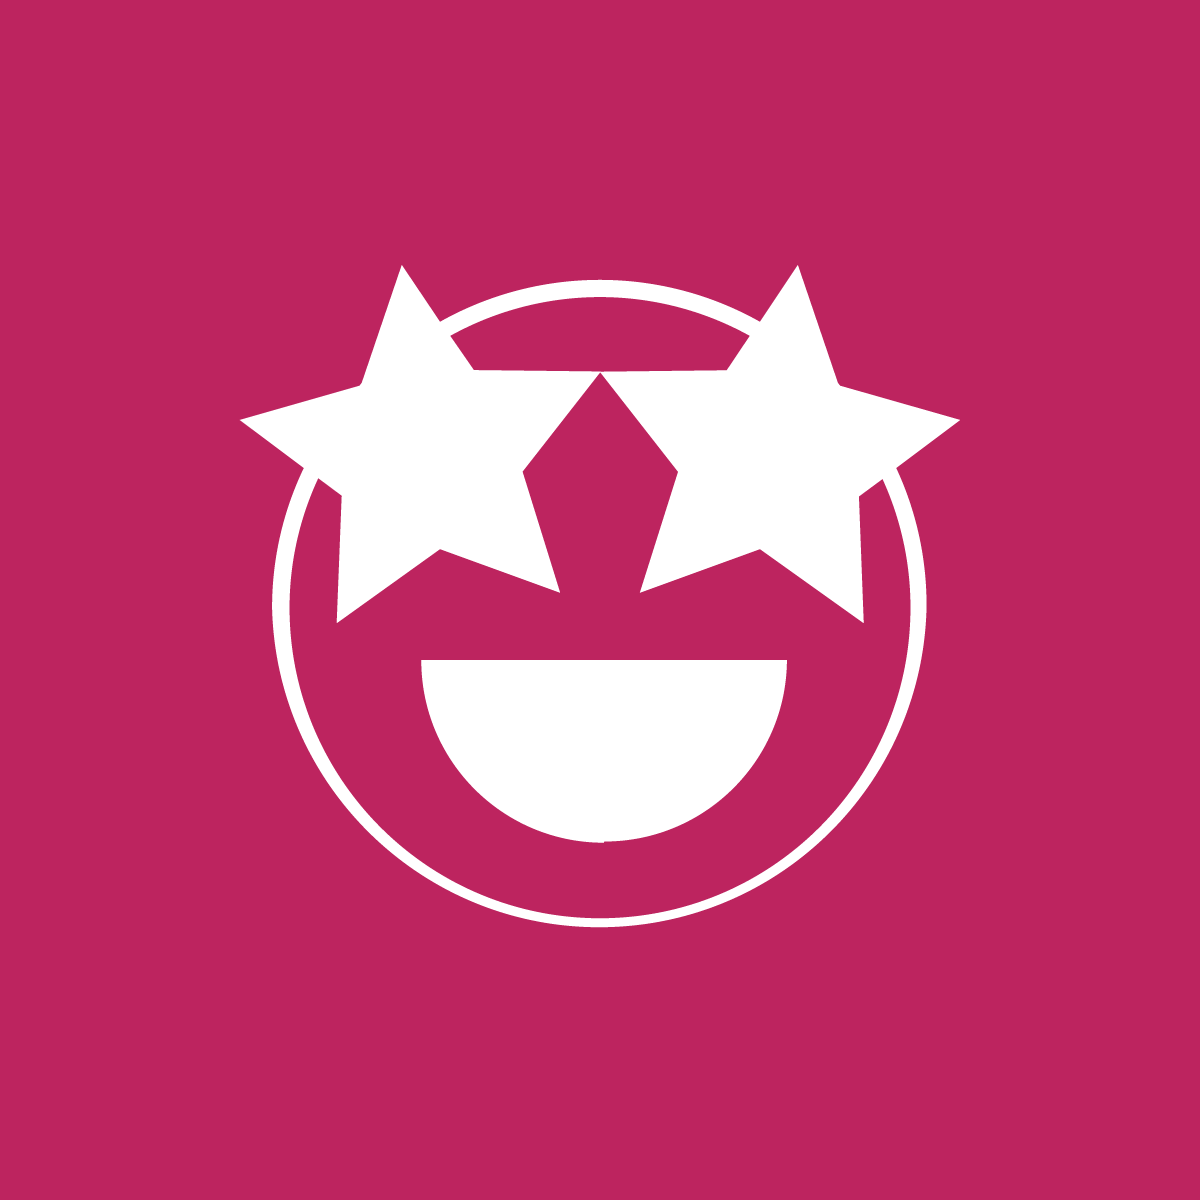 Smile-logo